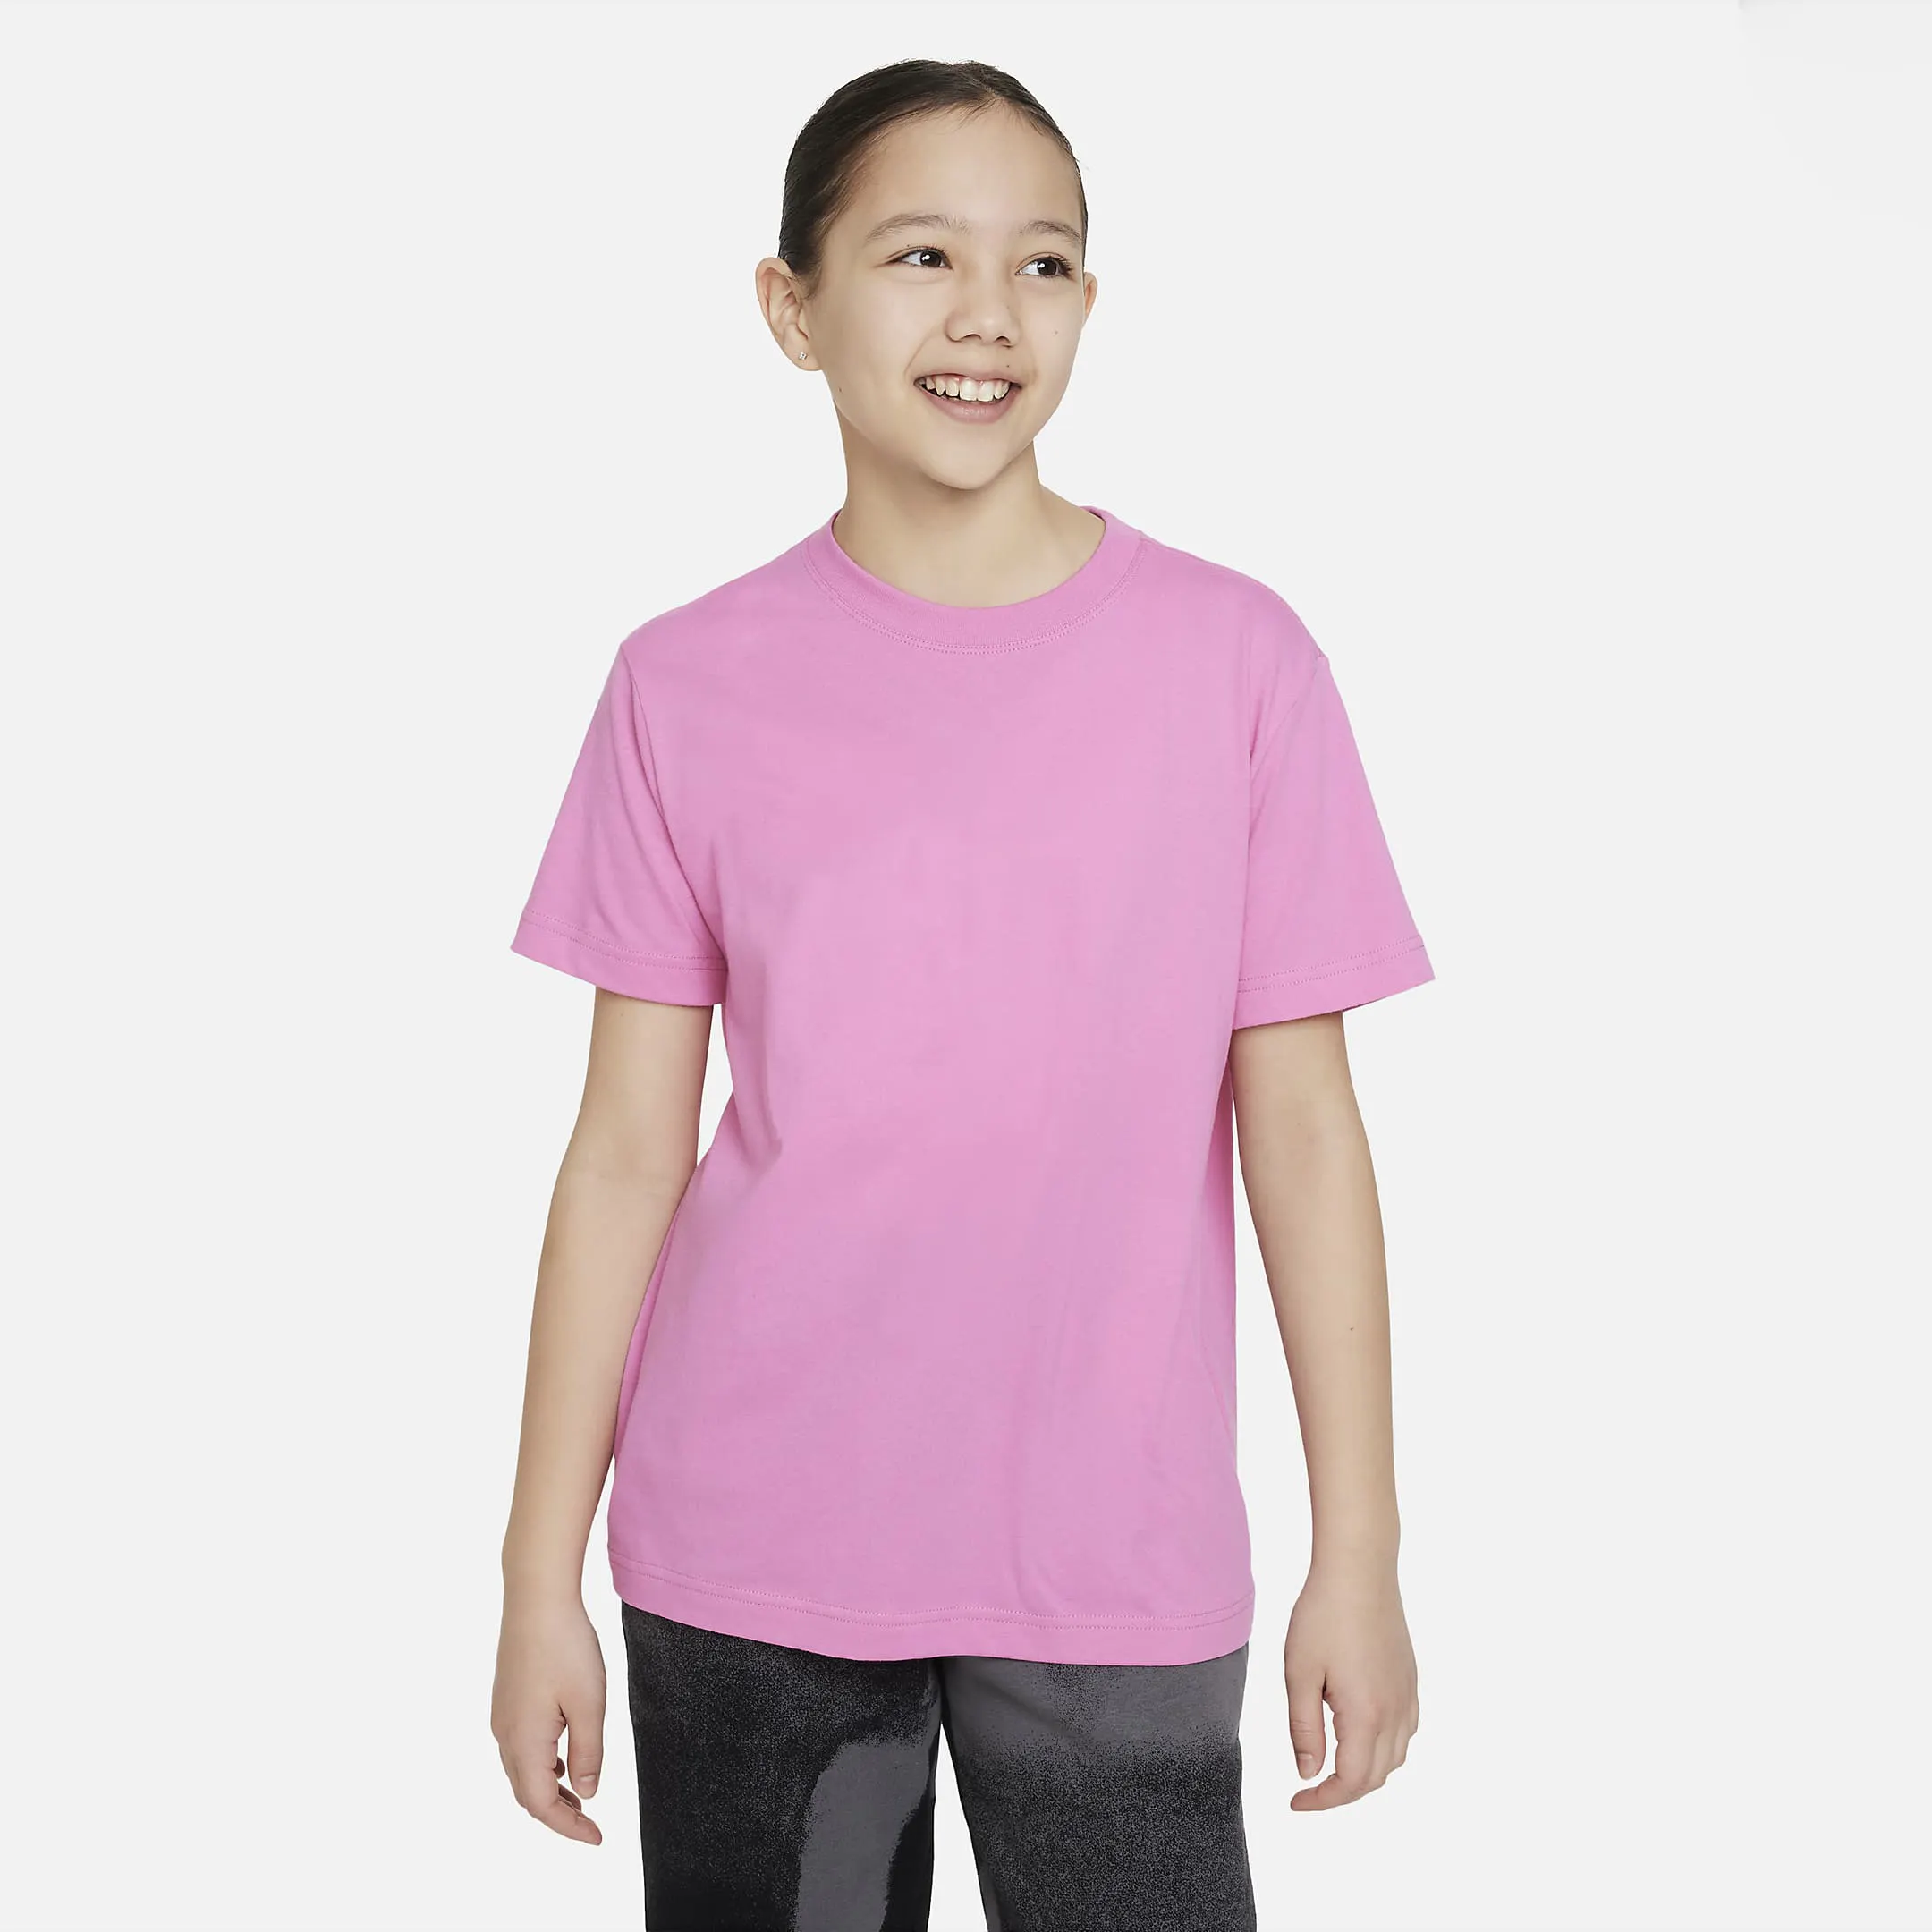 T-shirt à manches courtes pour enfants, impression de vêtements pour enfants